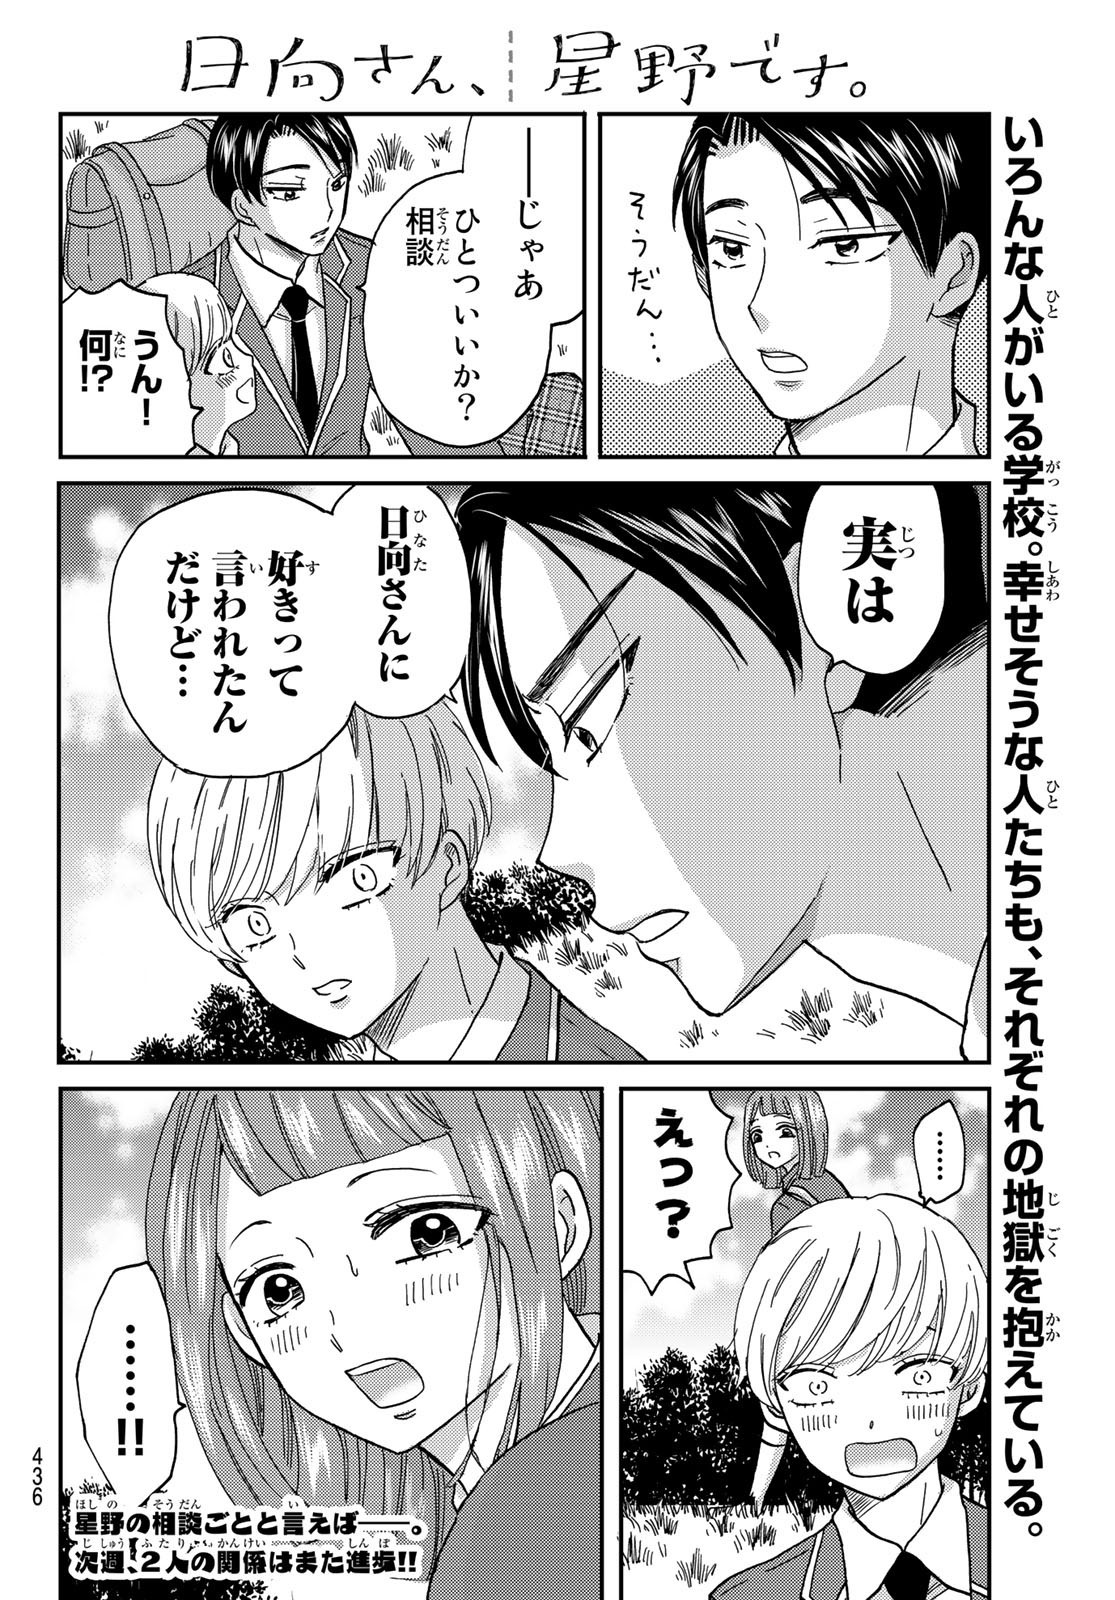 Hinata-san, Hoshino desu. - Chapter 013 - Page 10